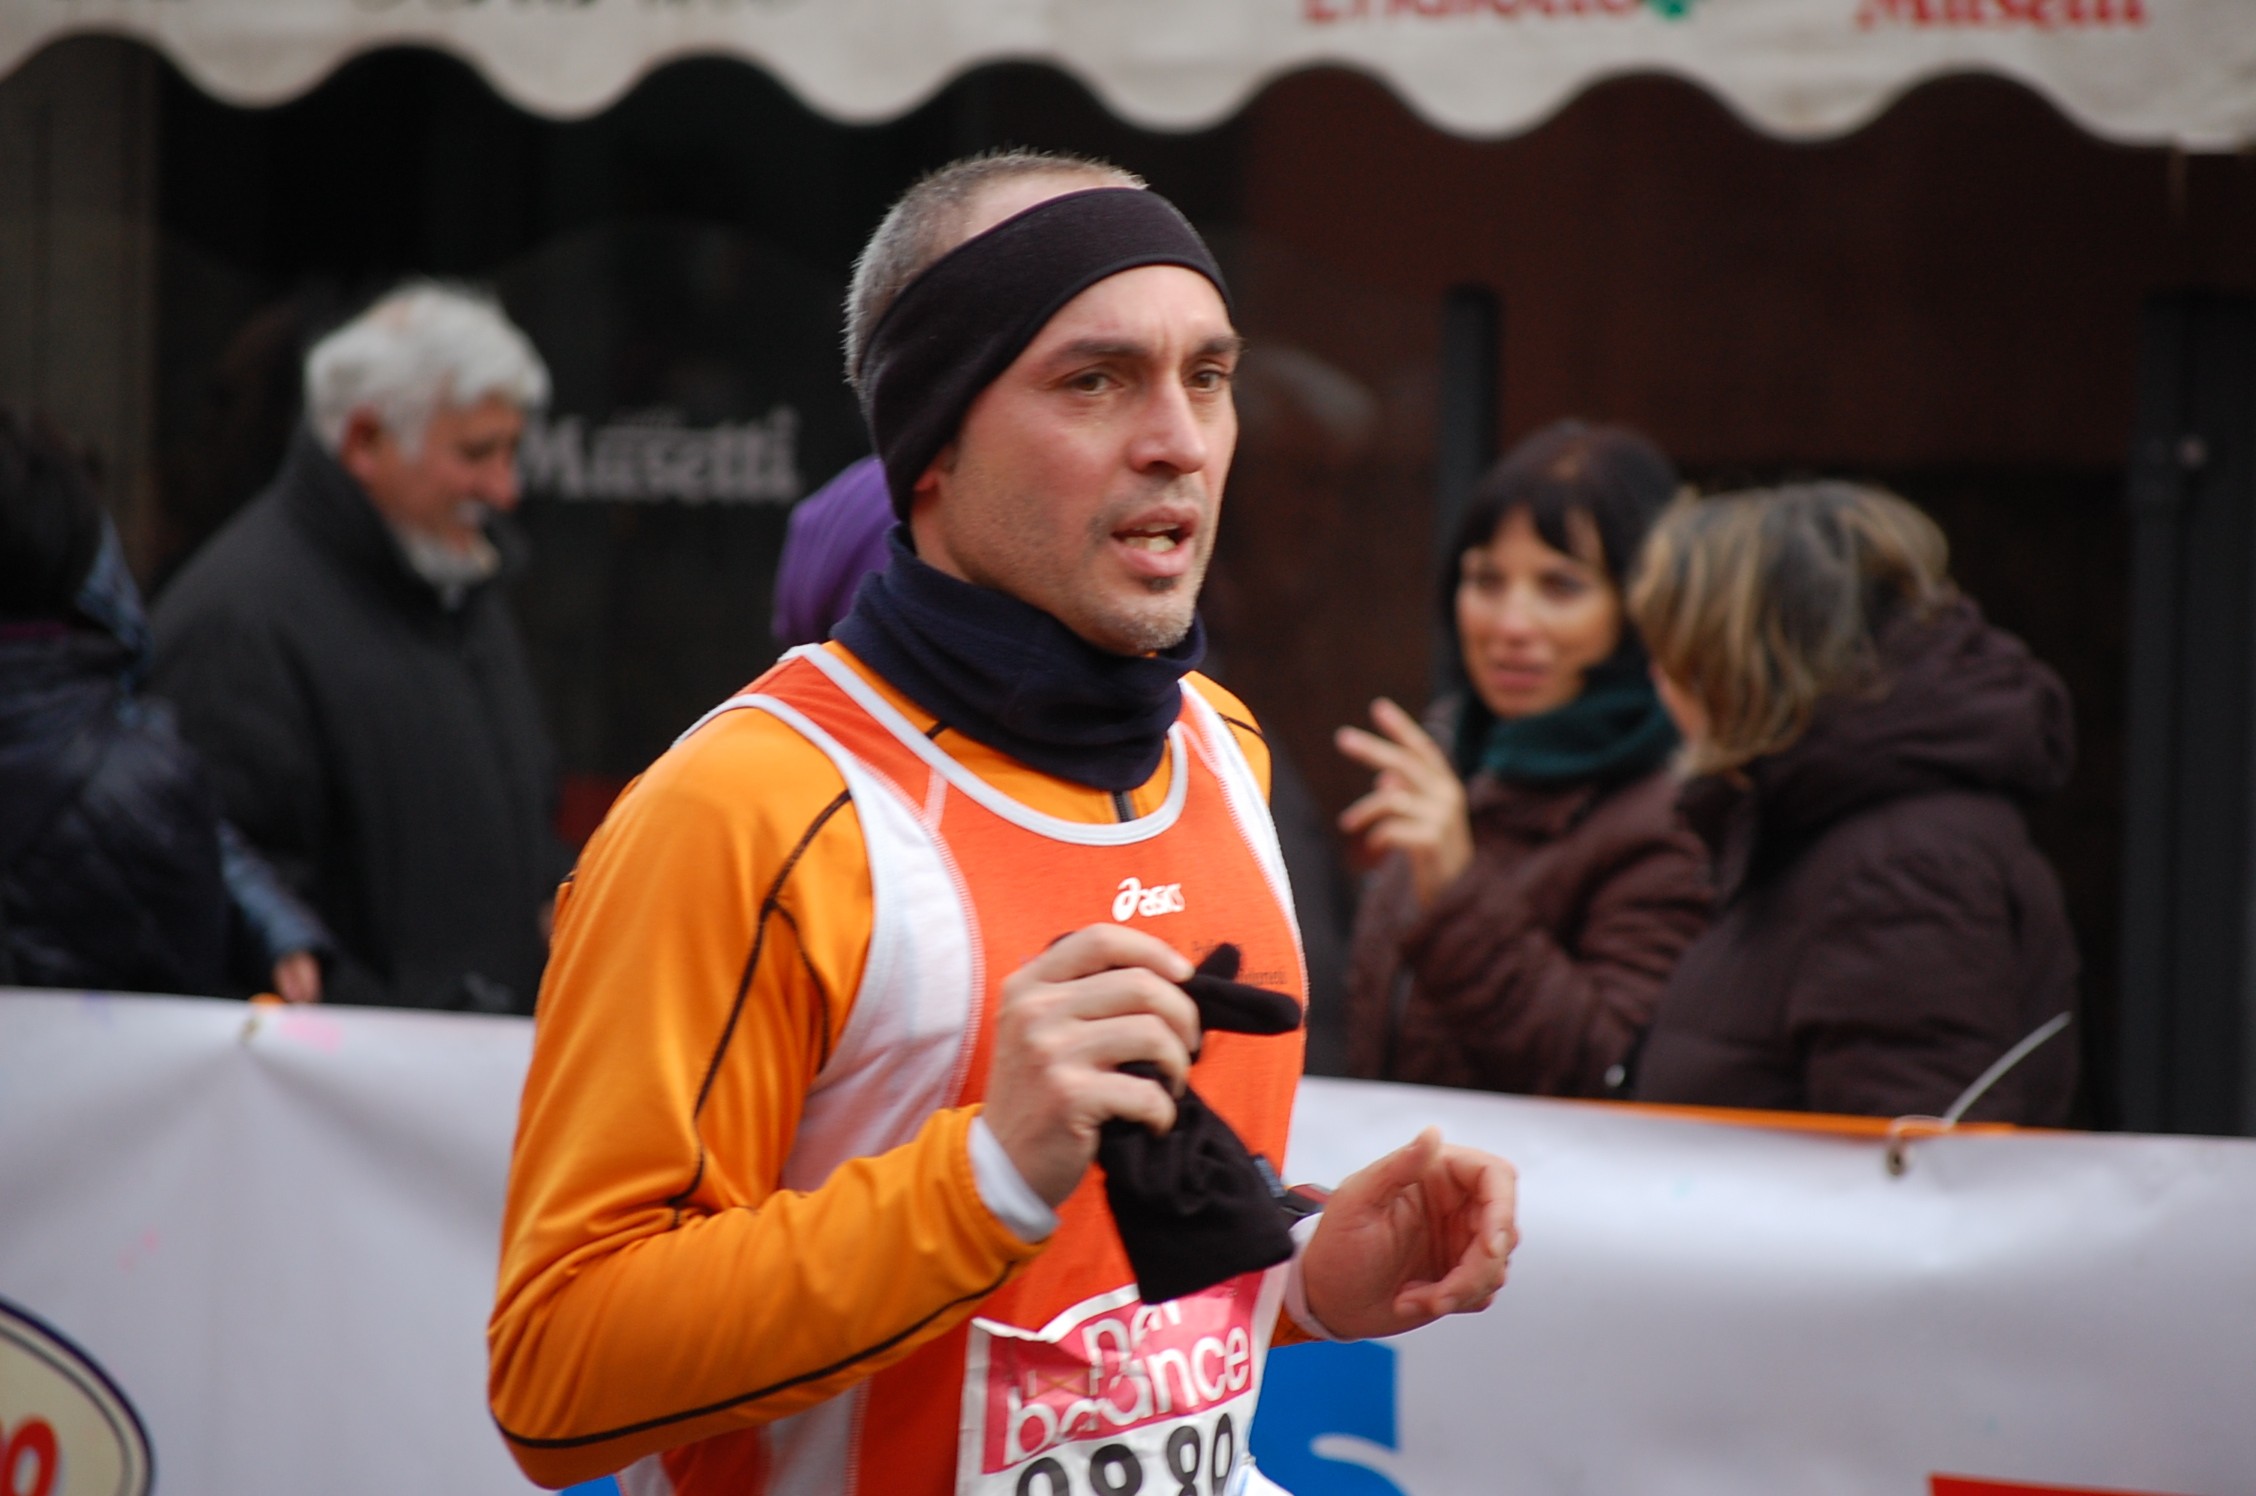 Maratonina dei Tre Comuni (30/01/2011) 076